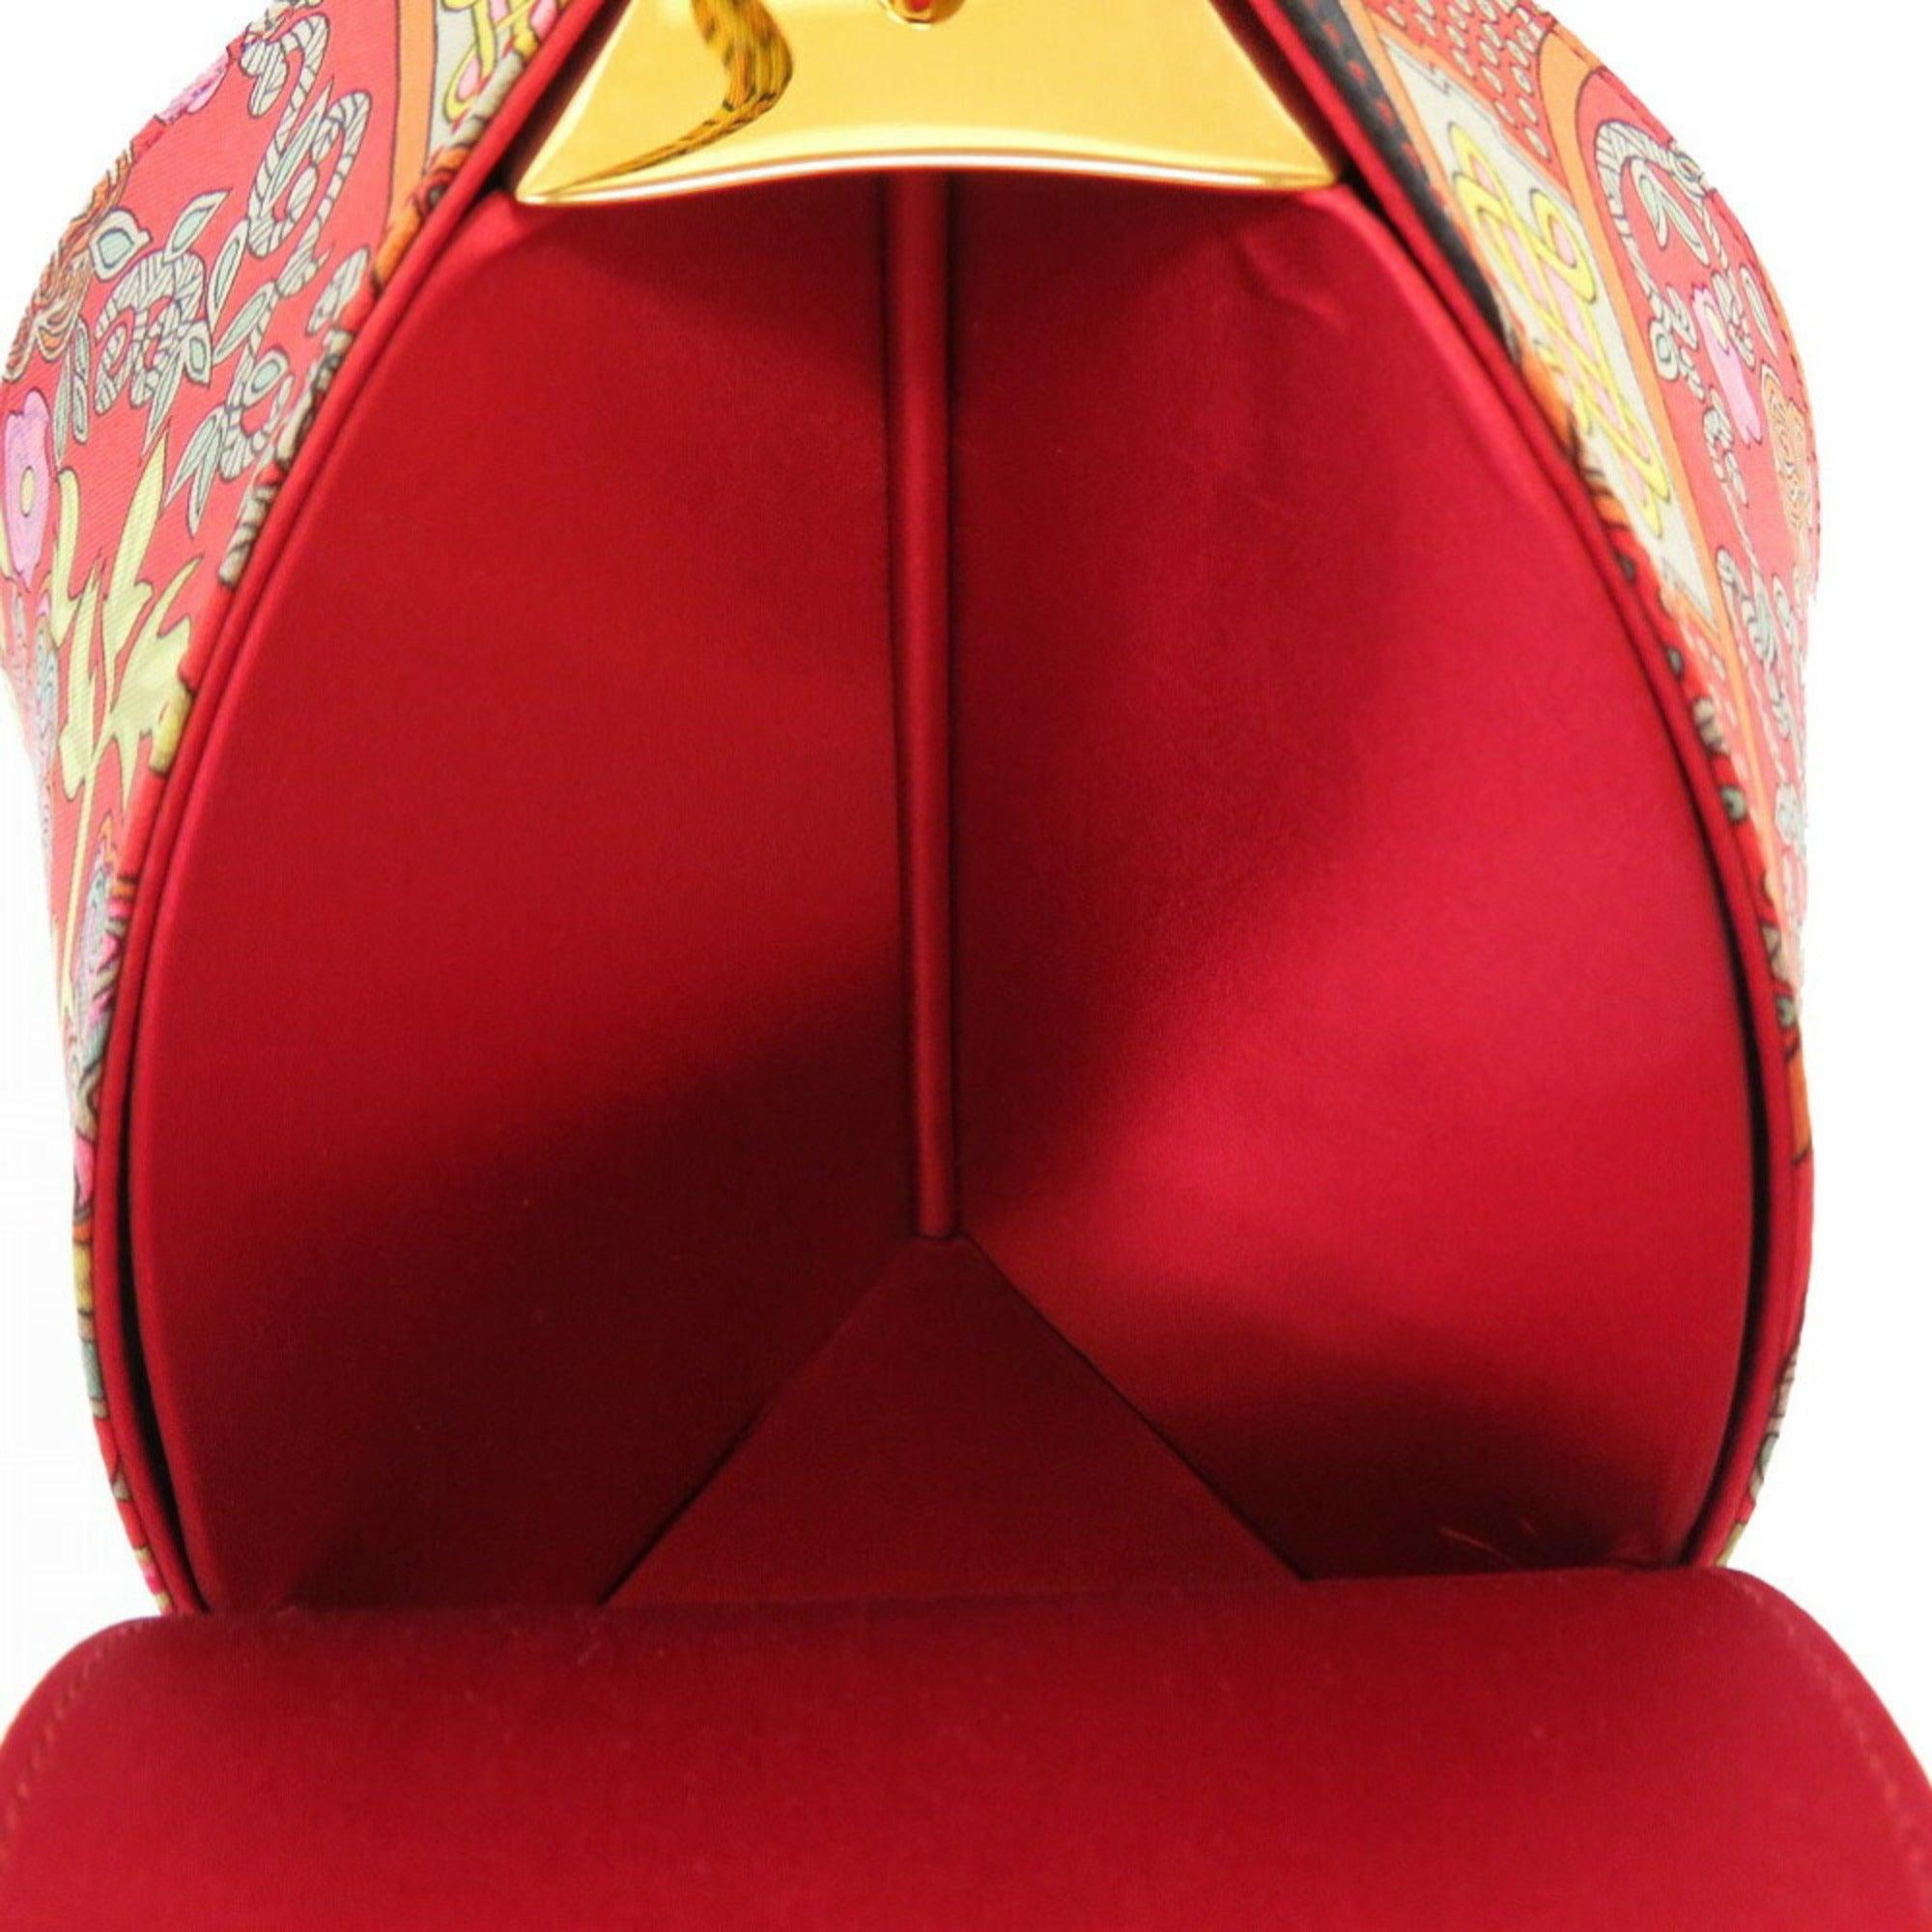 Hermes Art des Steppes Satin Red Shoulder Bag 0238 For Sale 1